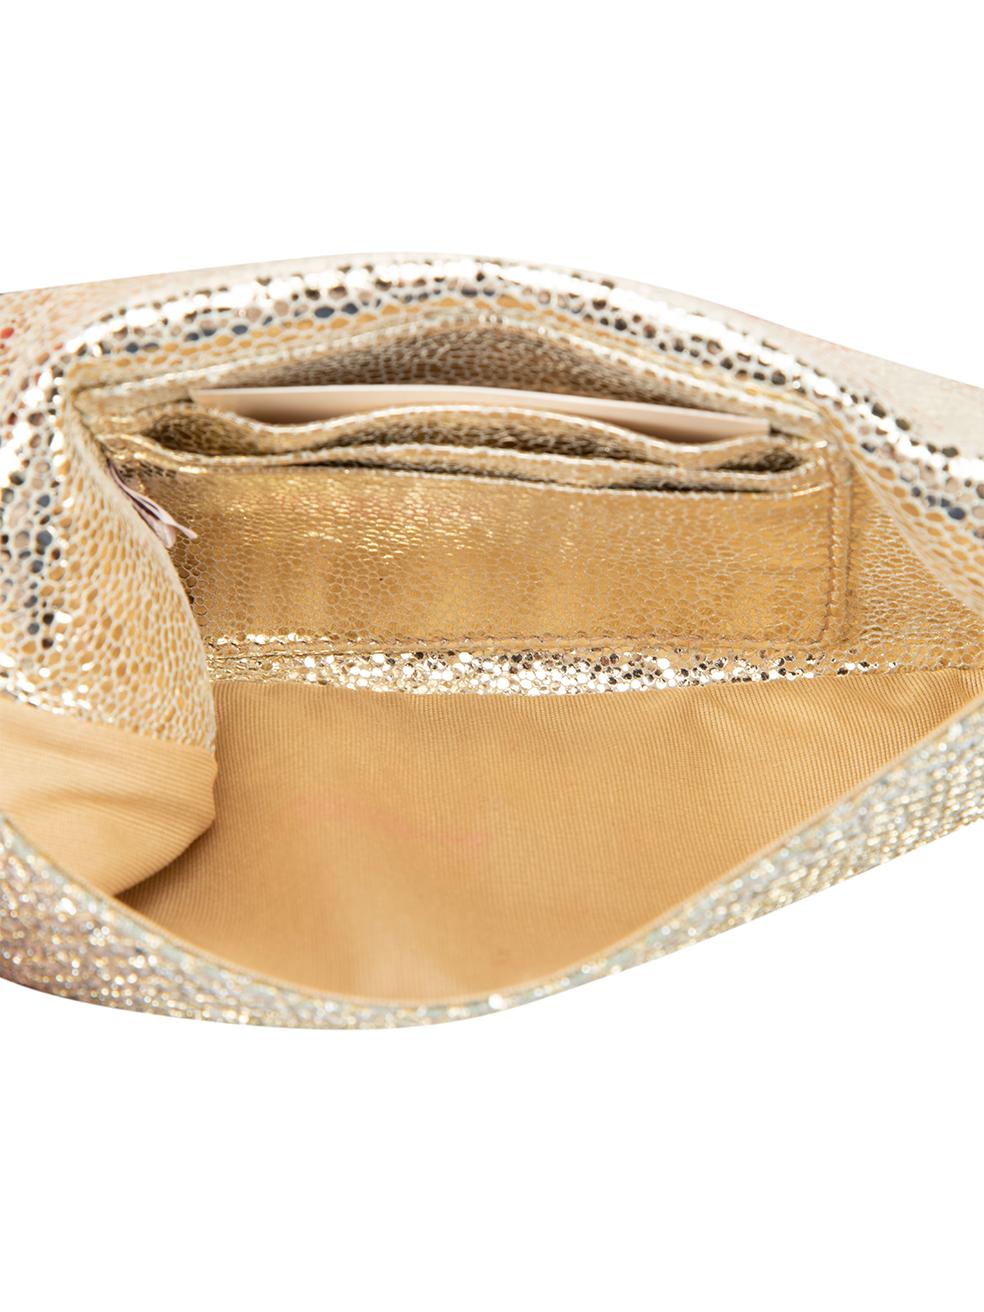 Jimmy Choo Women's Silver Glitter Clutch Bag For Sale 2